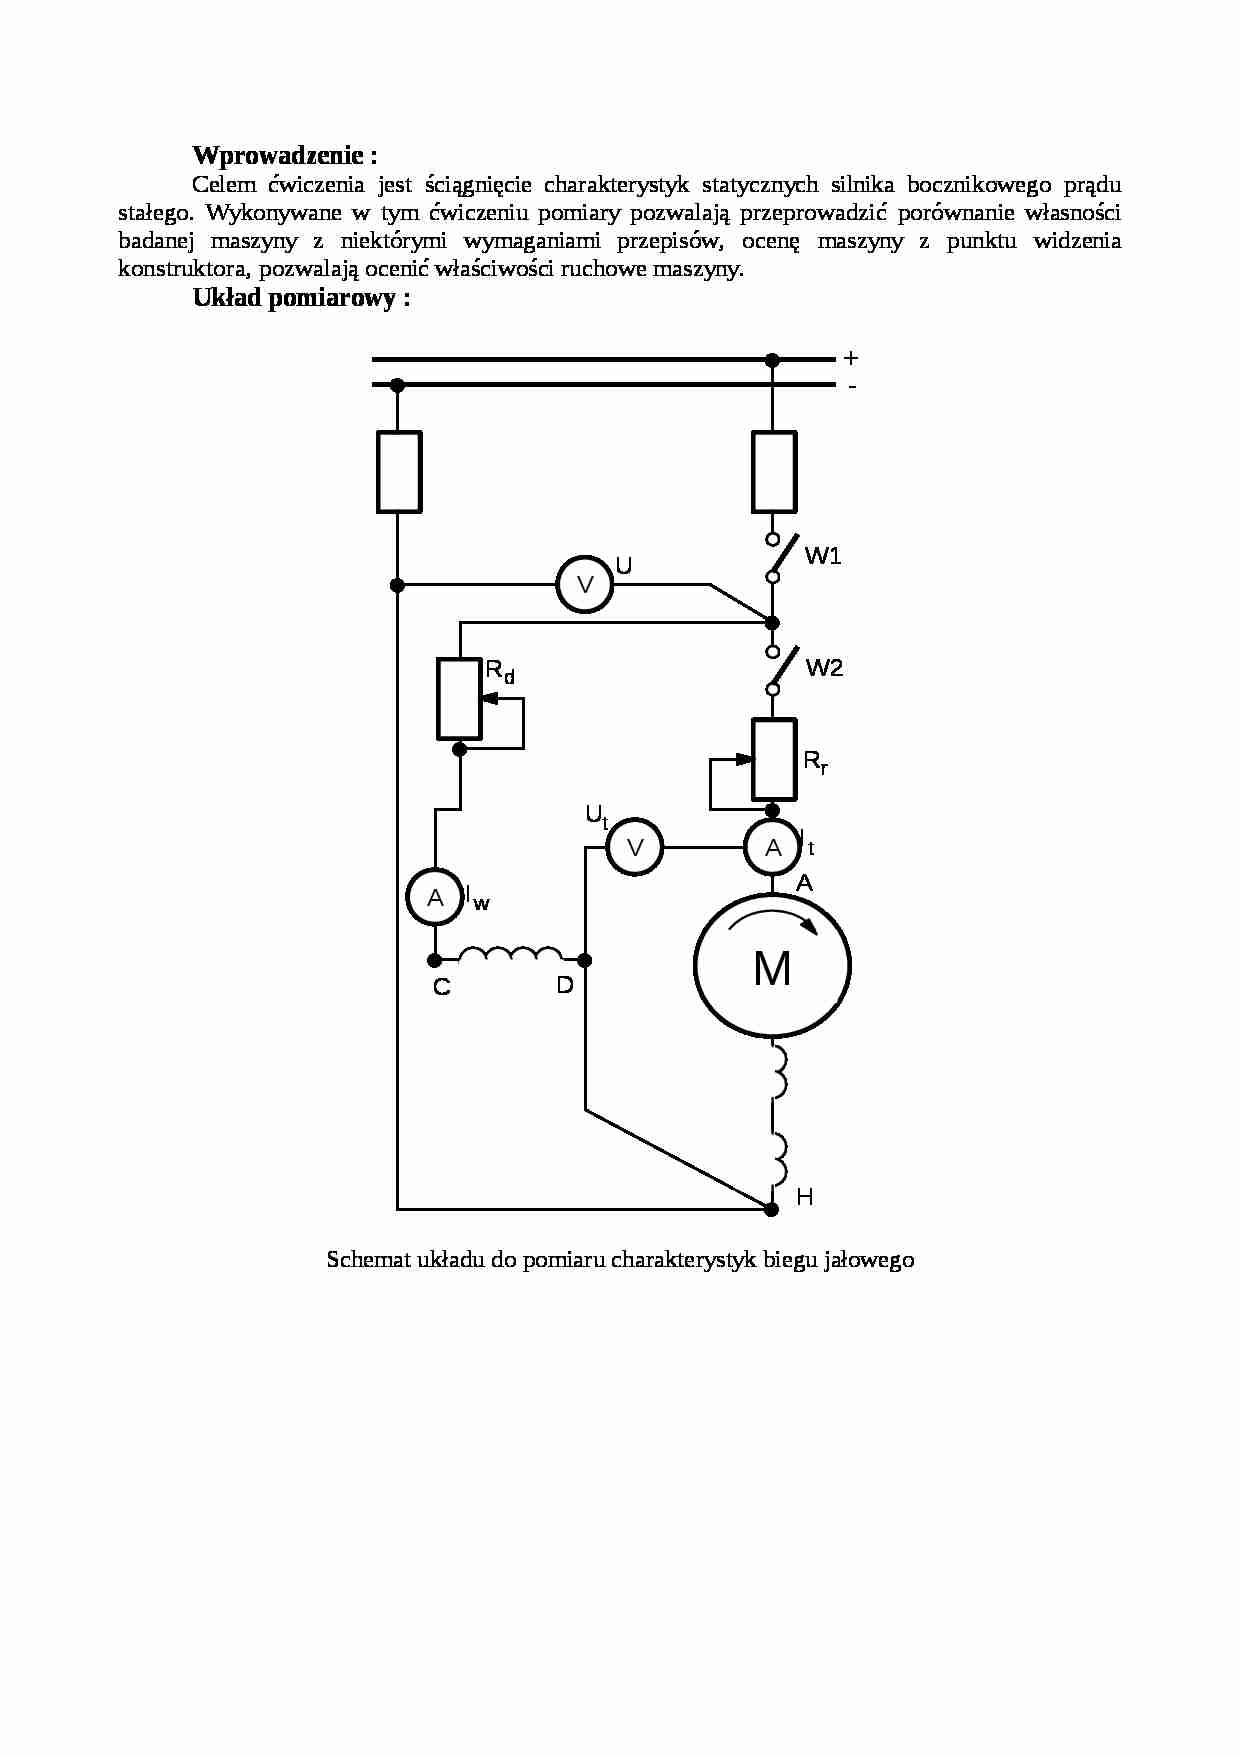 Silnika bocznikowego prądu stałego-opracowanie - strona 1